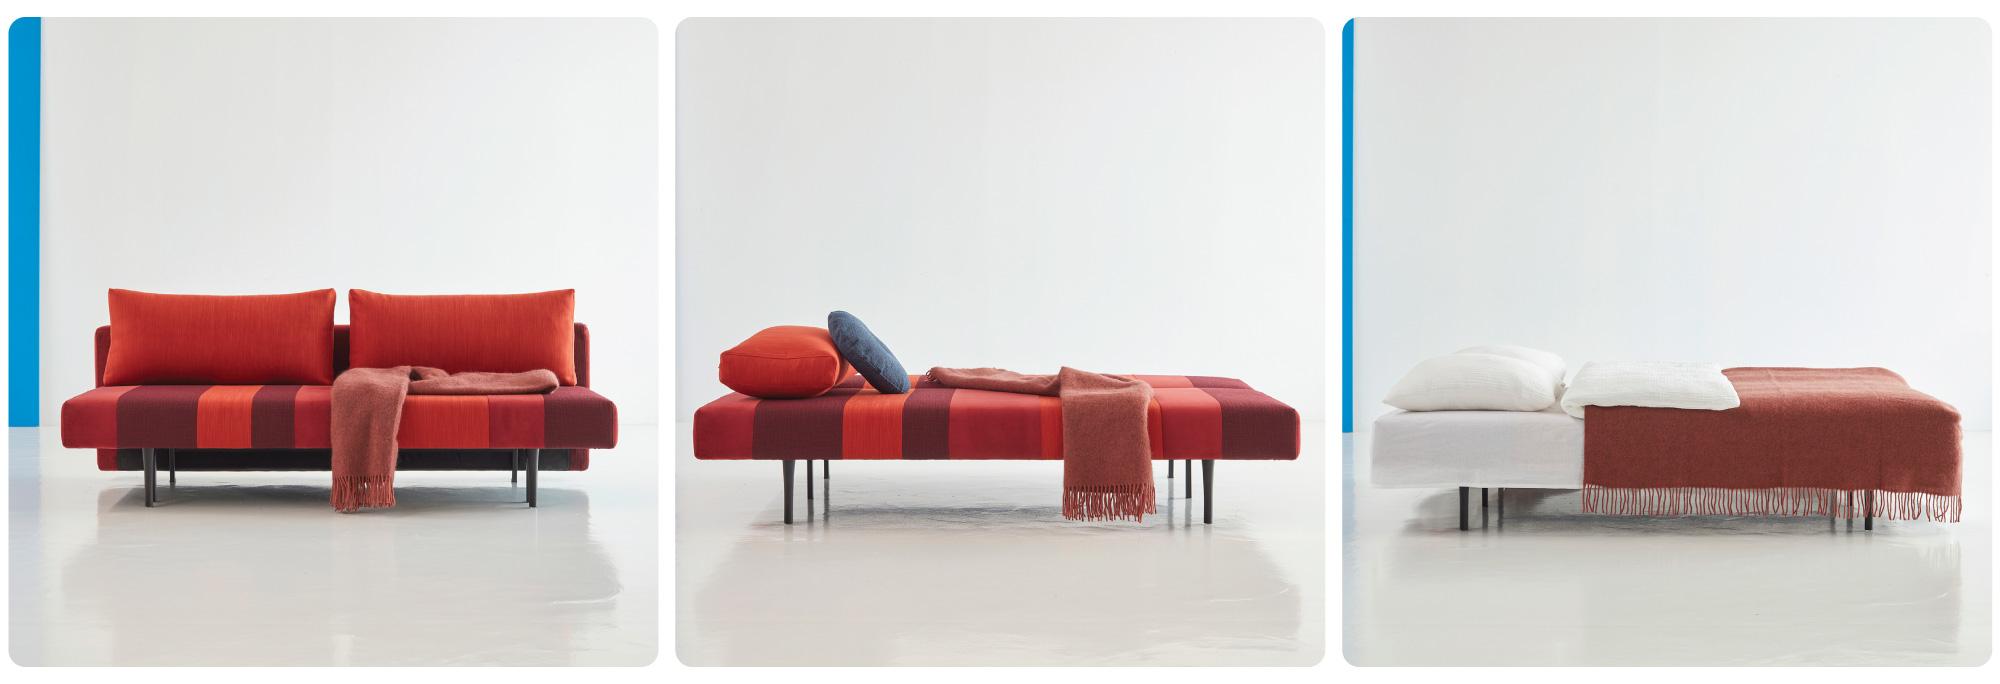 Conlix Patchwork Sofa-Bed